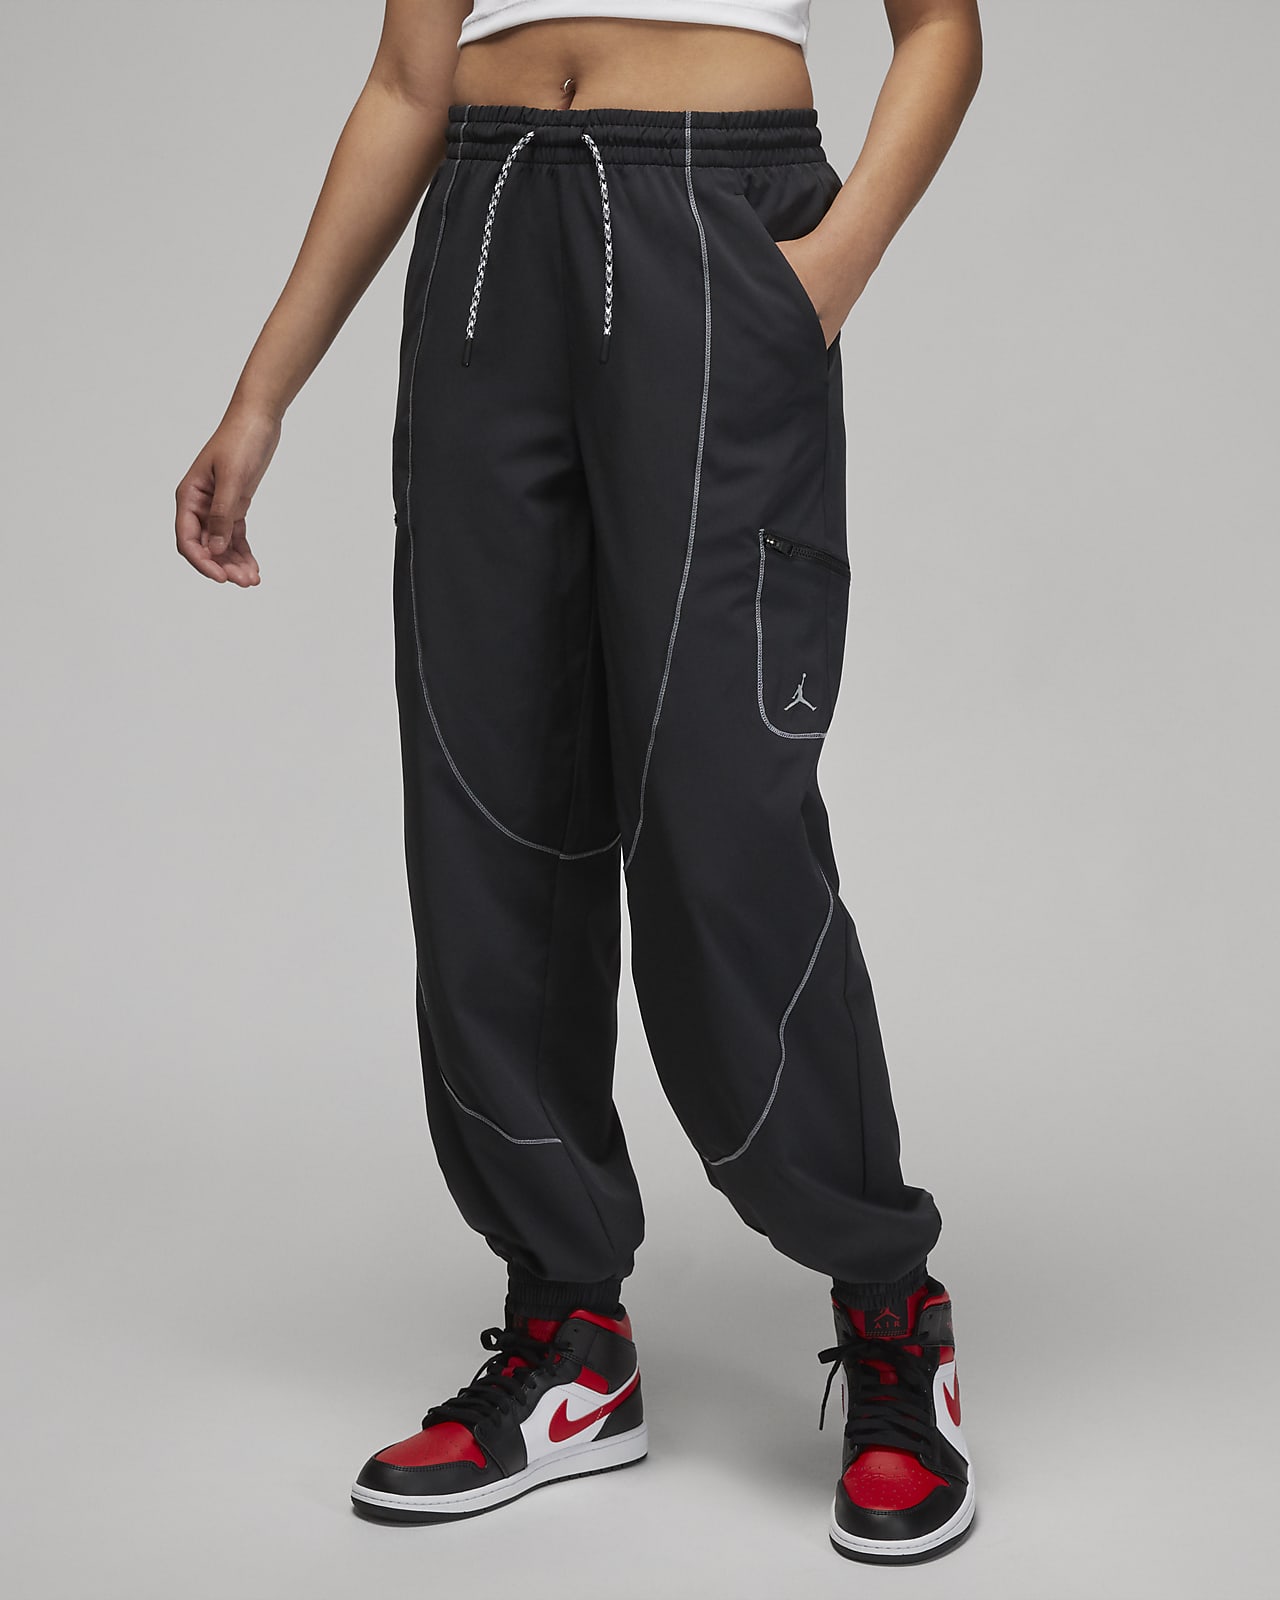 Jordan Sport Pantalons de camals rectes - Dona